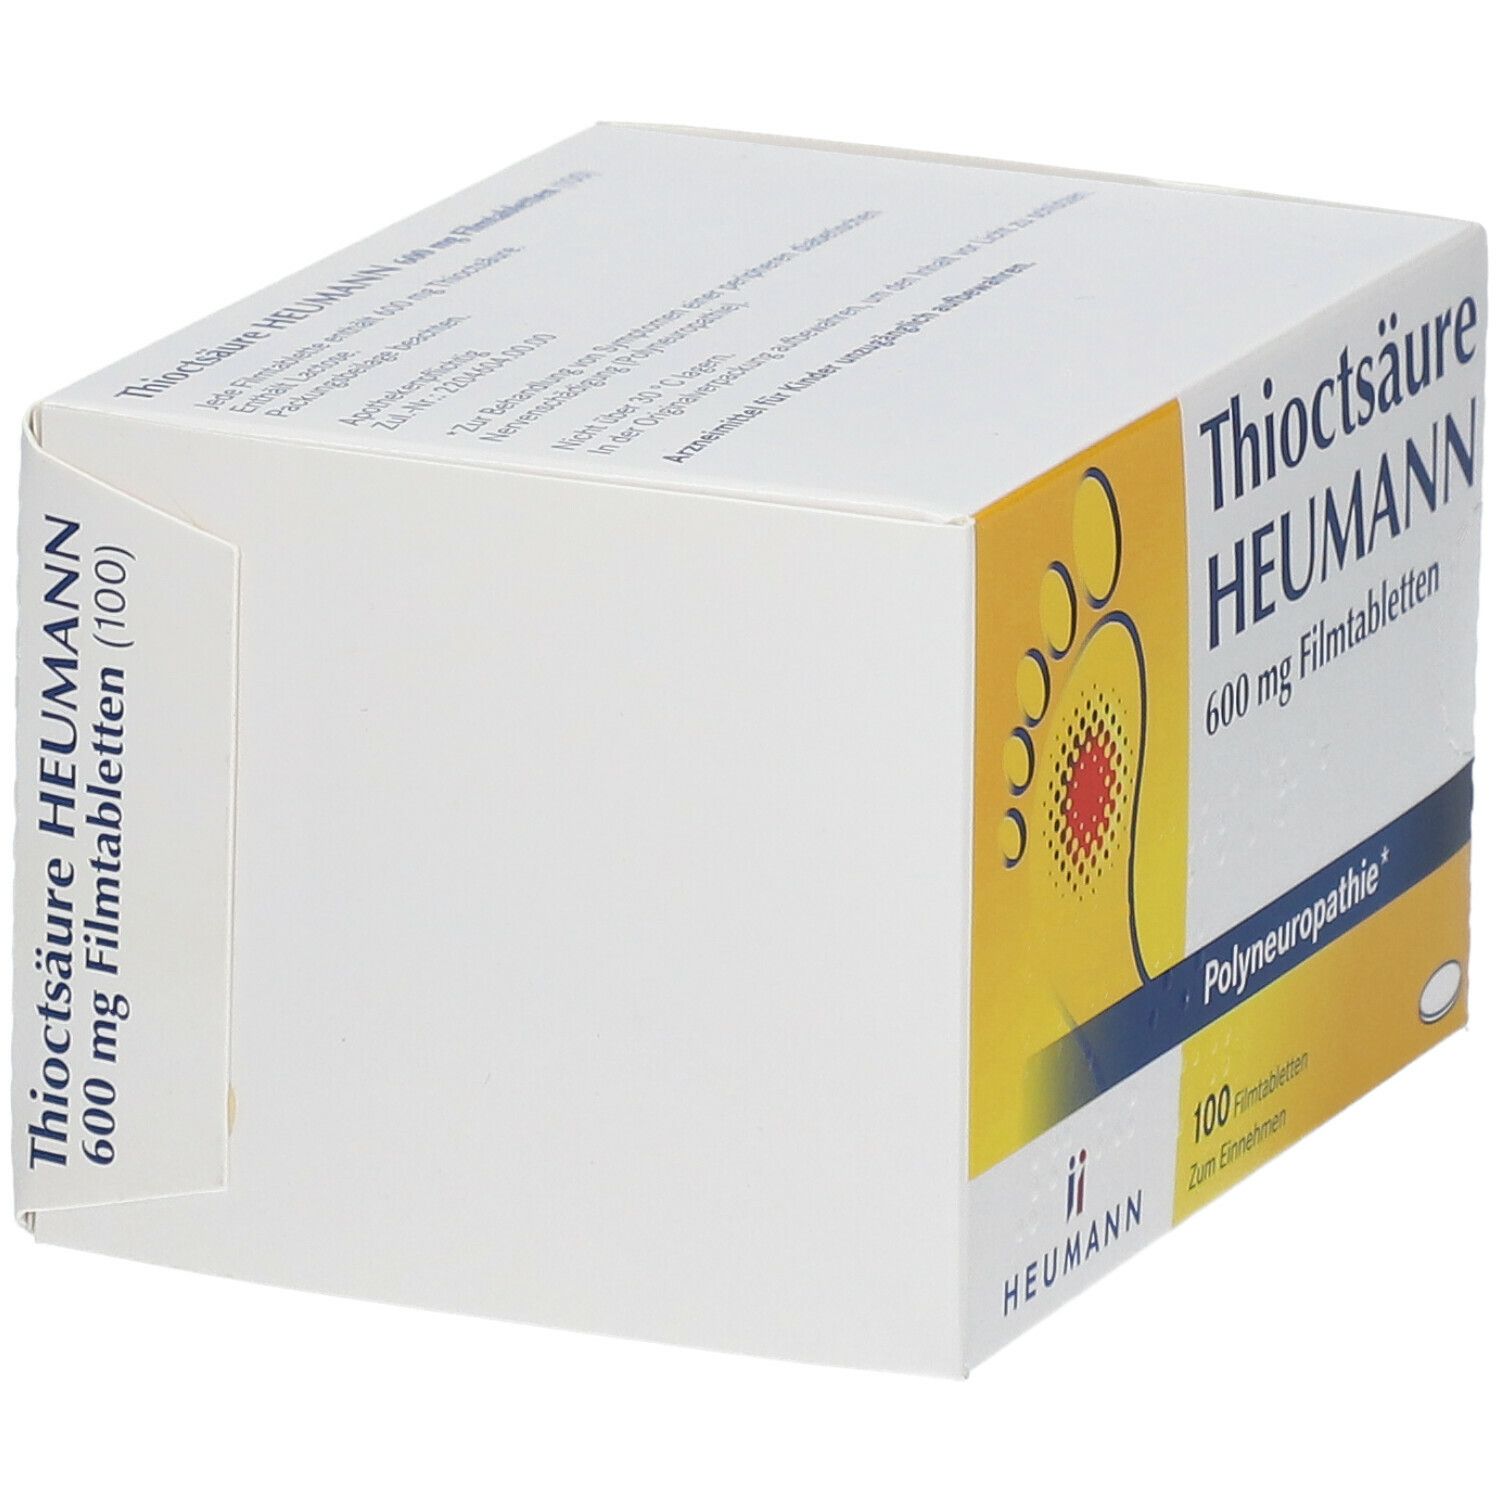 Thioctsäure Heumann 600 mg